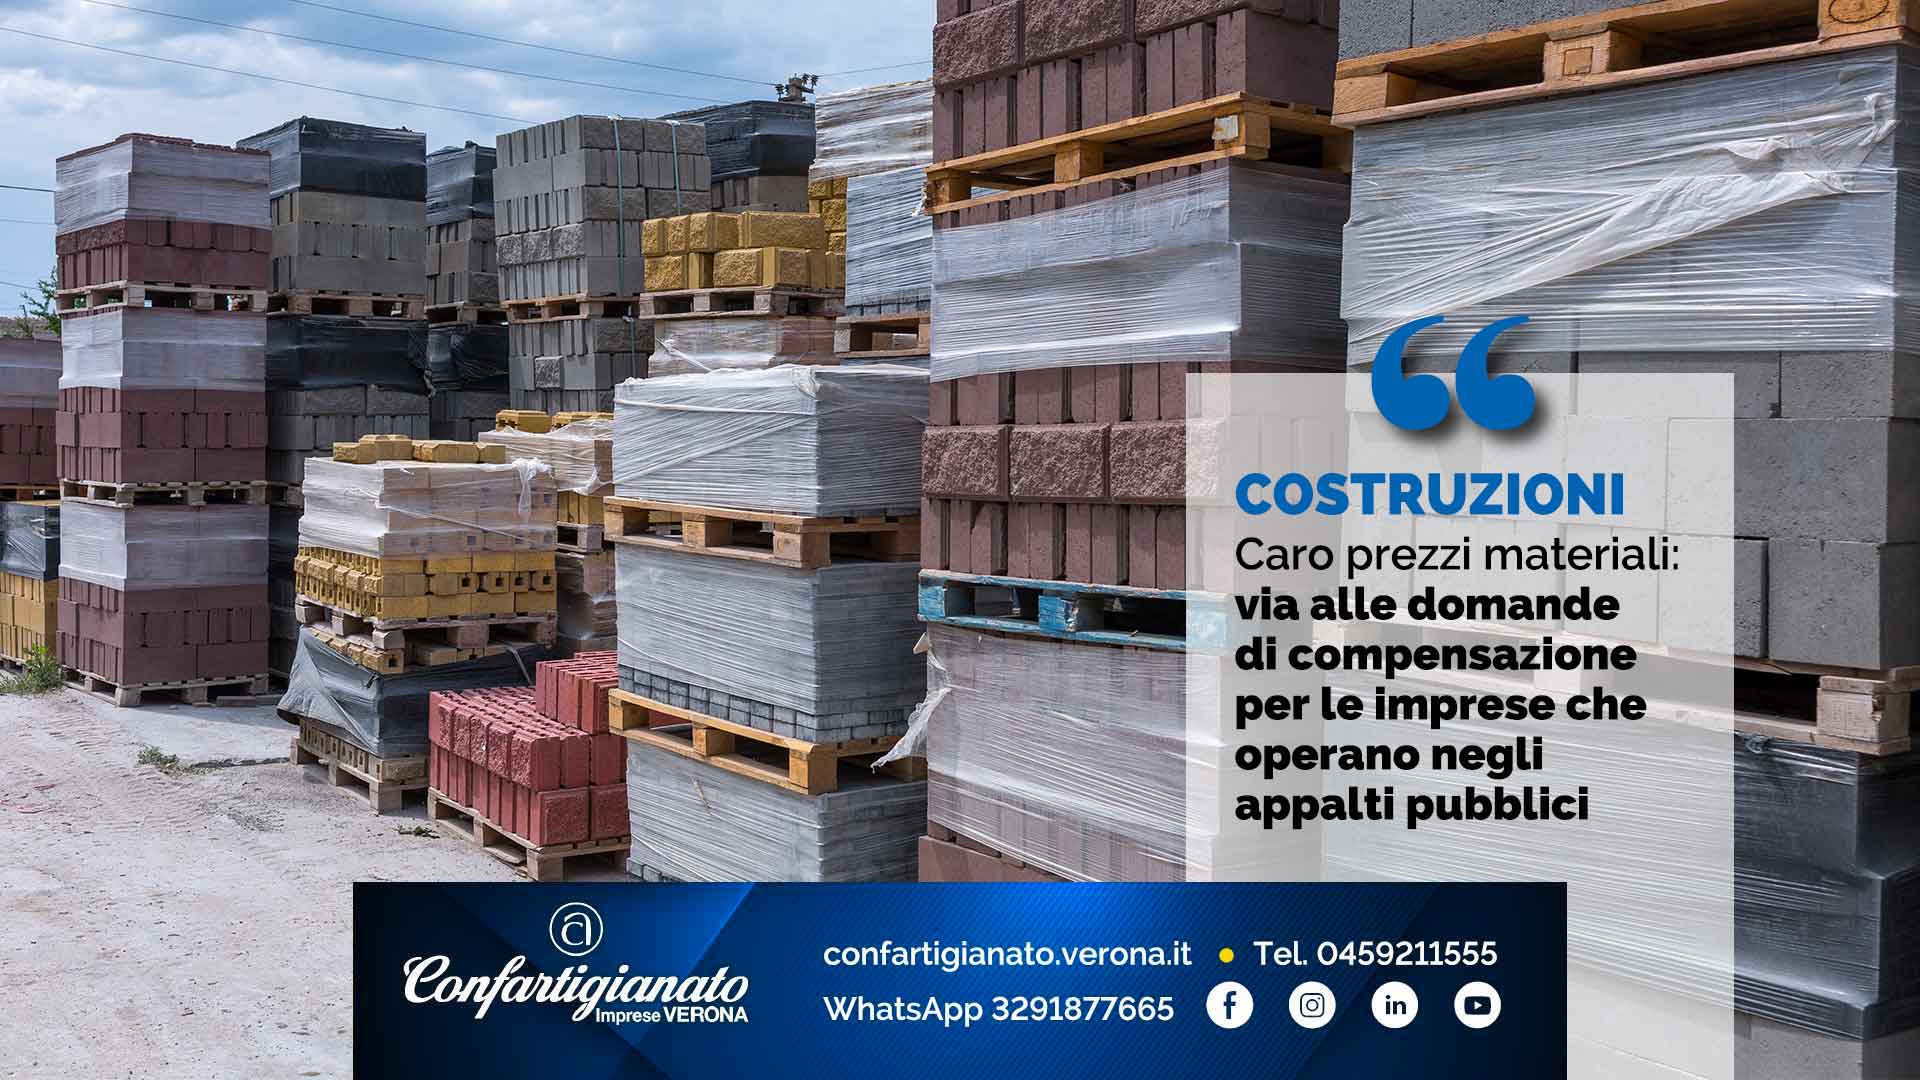 COSTRUZIONI – Caro prezzi materiali: via alle domande di compensazione, per le imprese che operano negli appalti pubblici